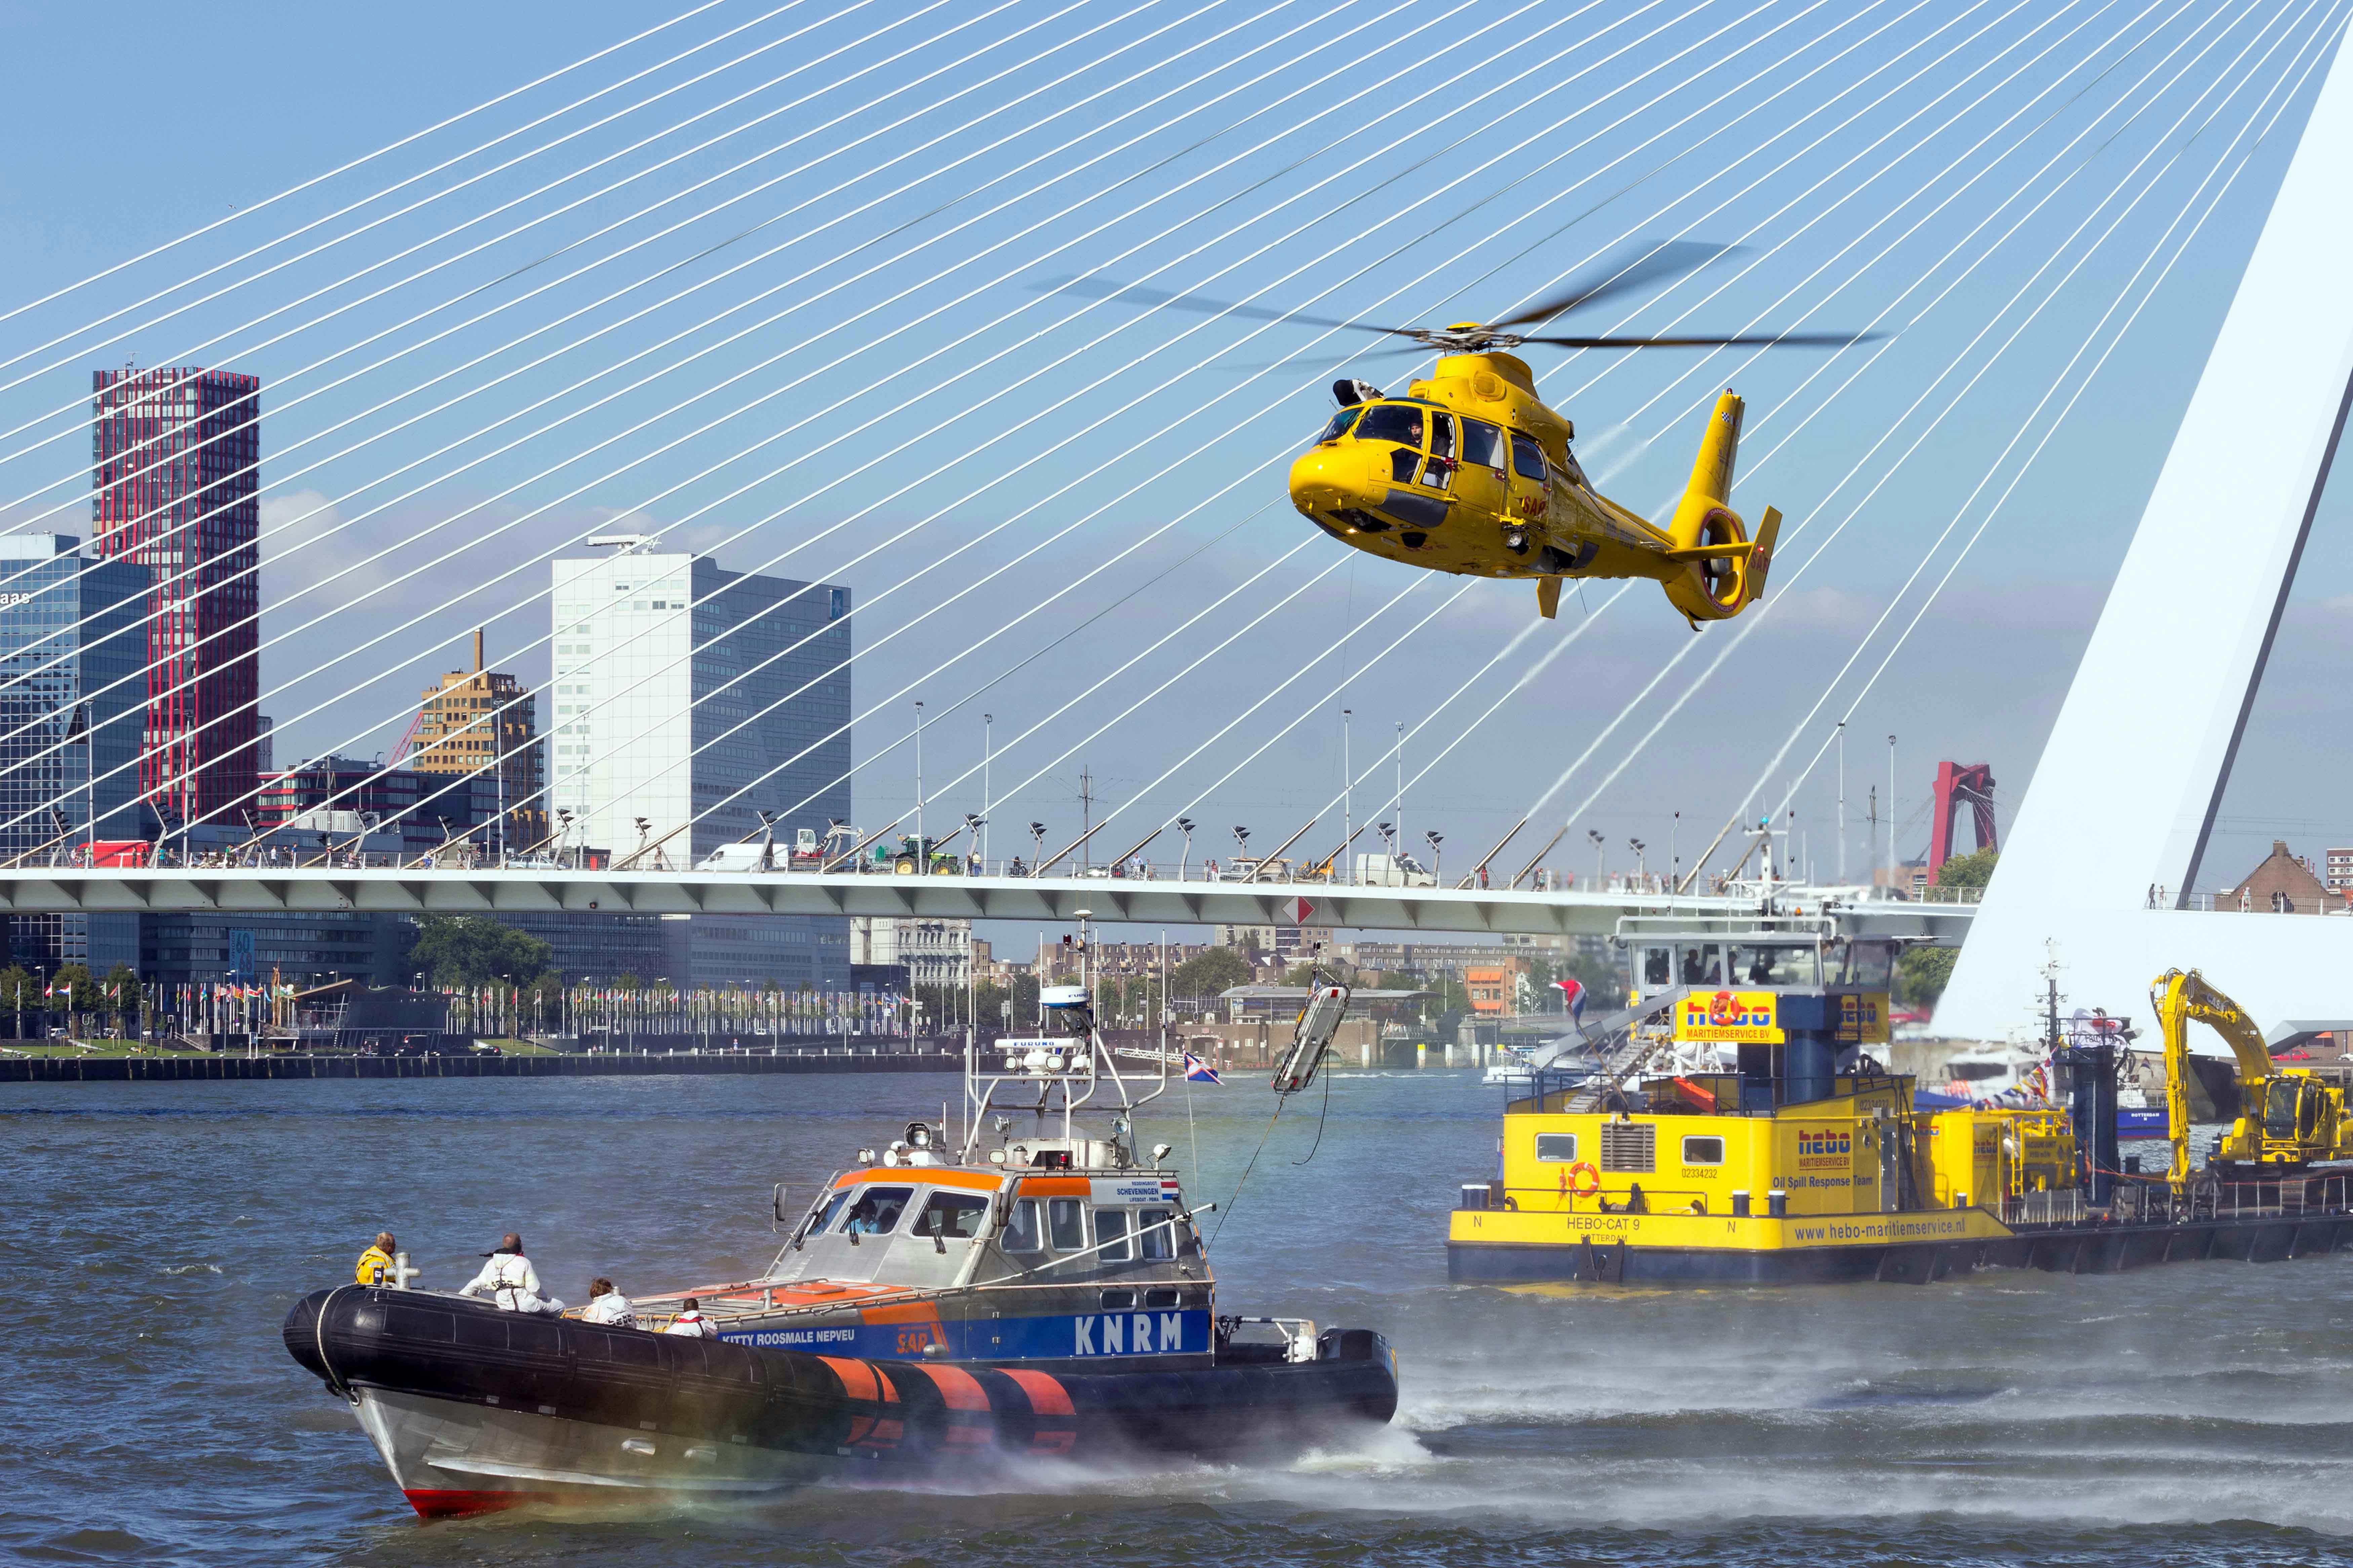 Boot, Hubschrauber und Fähre in einer städtischen Umgebung